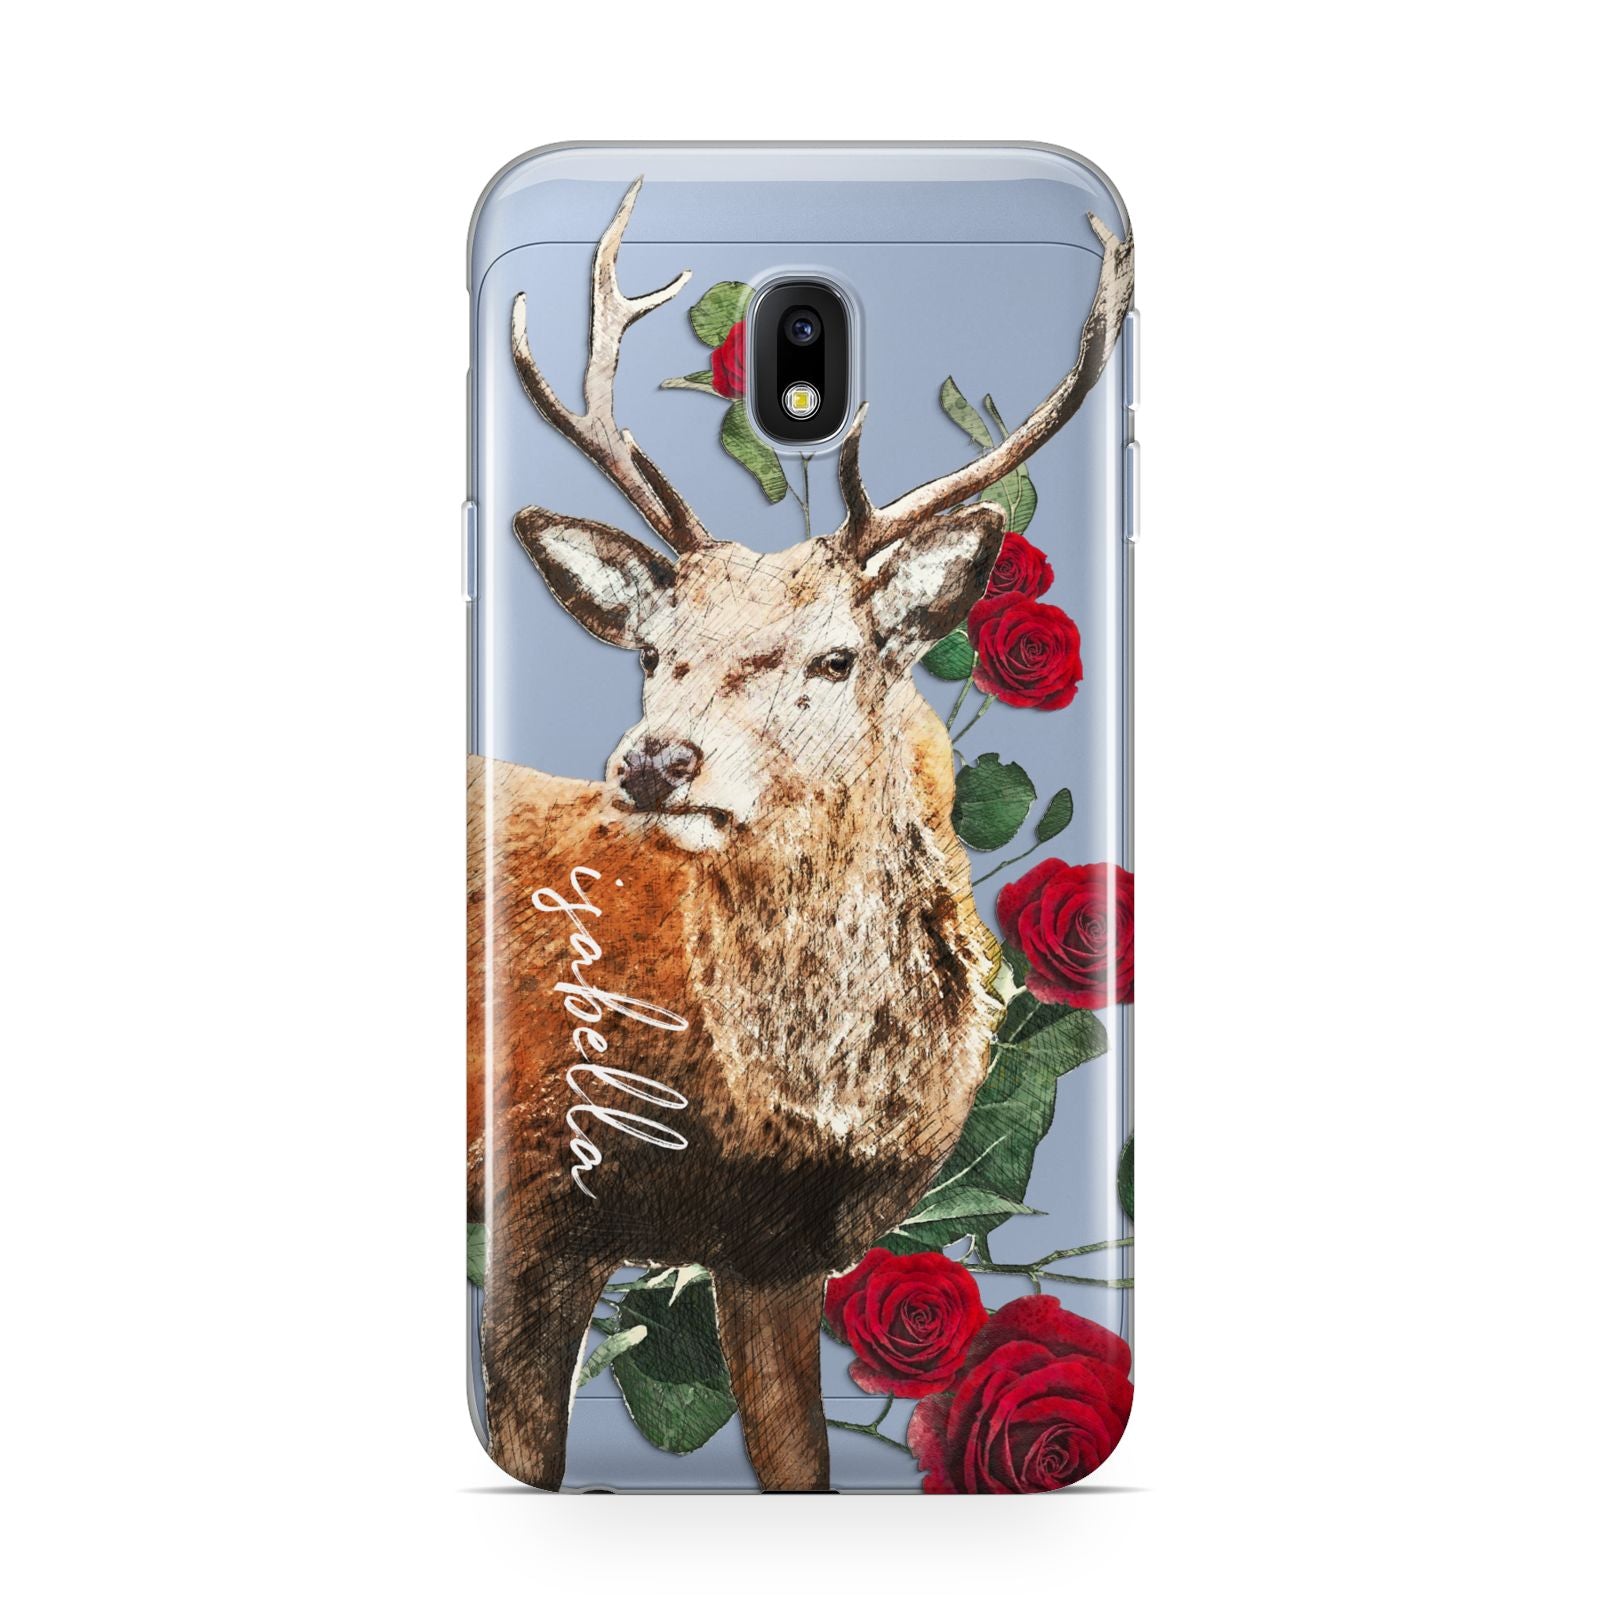 Personalised Deer Name Samsung Galaxy J3 2017 Case